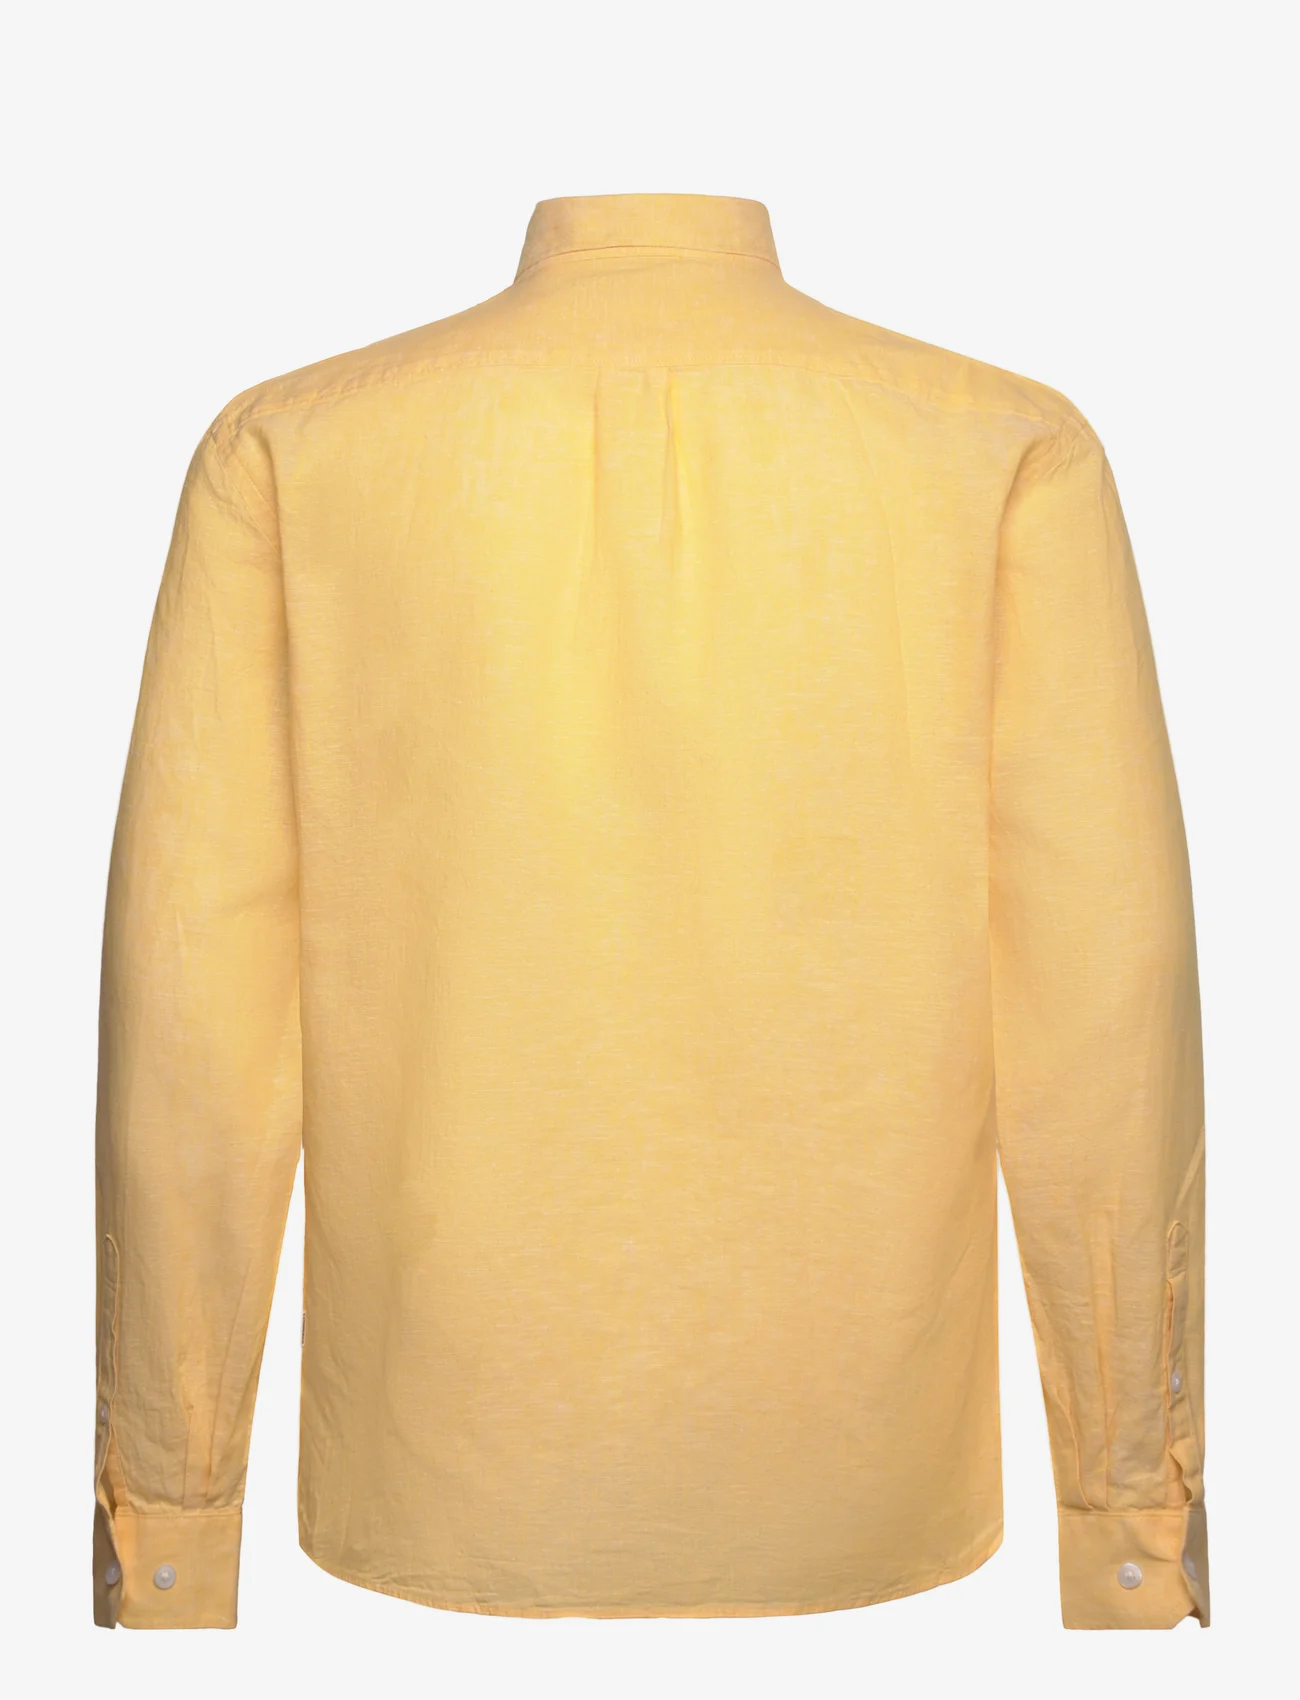 Lindbergh - Linen/cotton shirt L/S - linskjorter - mid yellow - 1